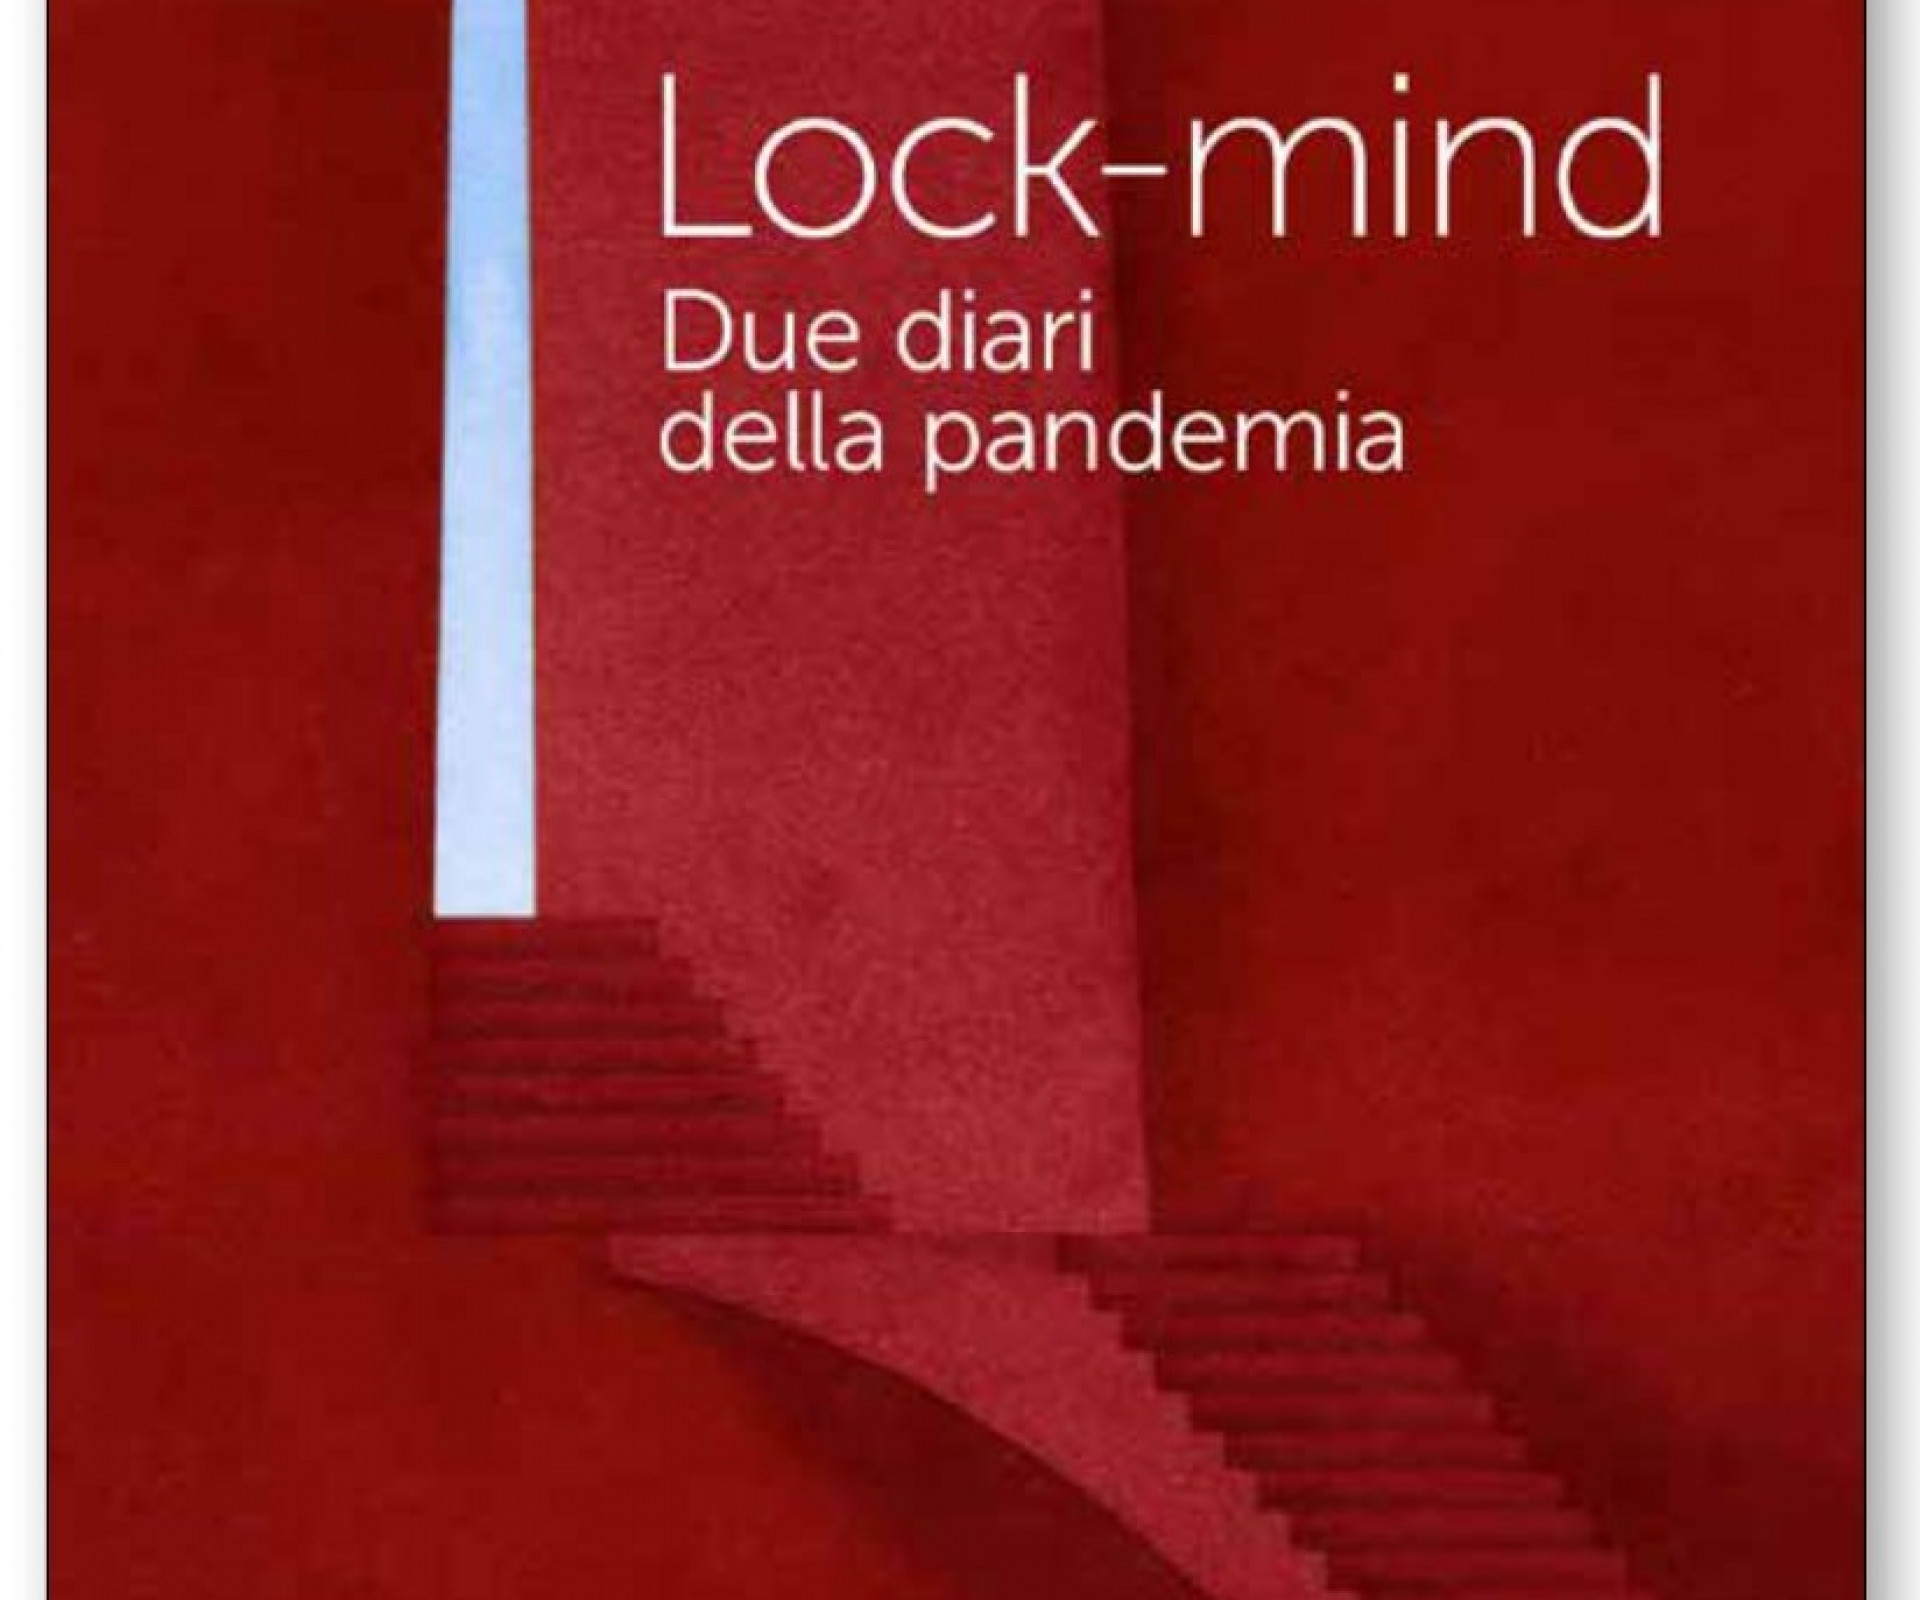 LOCK-MIND - Due diari della pandemia, di P. R. Goisis e A. A. Moroni